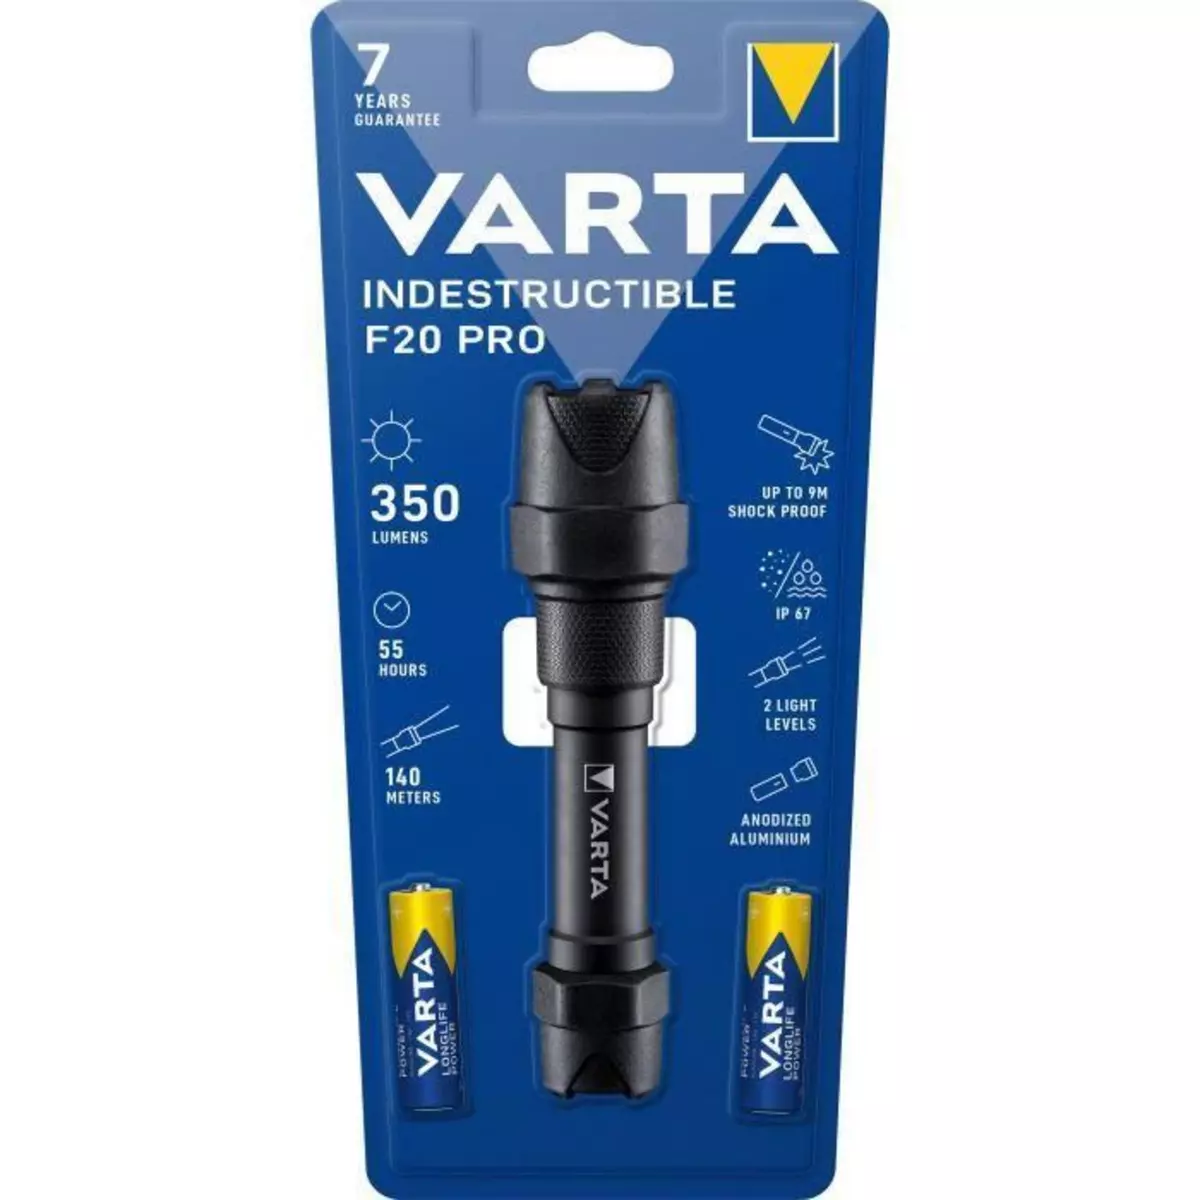  Torche-VARTA-Indestructible F20 Pro-350lm-Garantie 7ans-Resistante au chocs (9m) a l'eau et la poussiere- IP67-2 Piles AA incluses